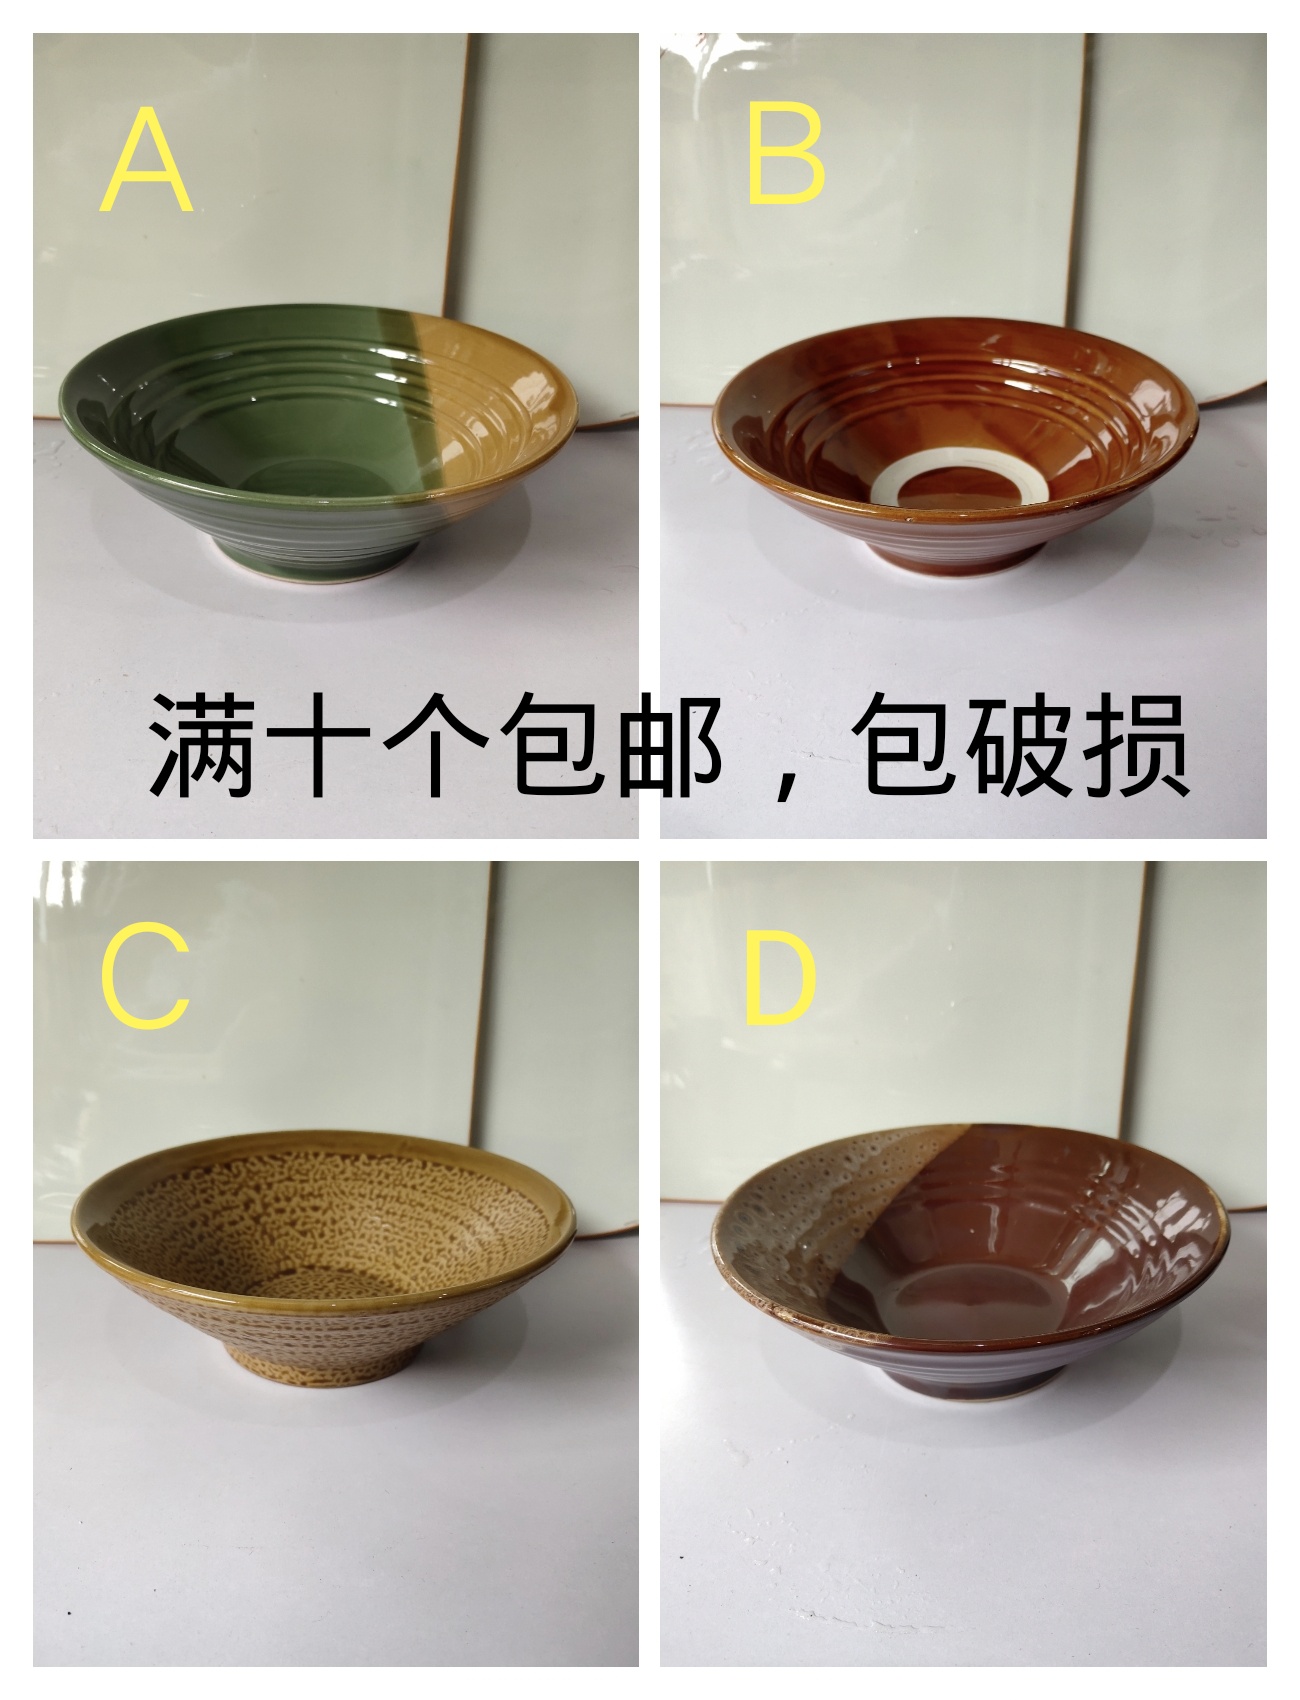 复古特色陶瓷面碗各种颜色重庆小面碗拉面碗米线碗凉皮碗等